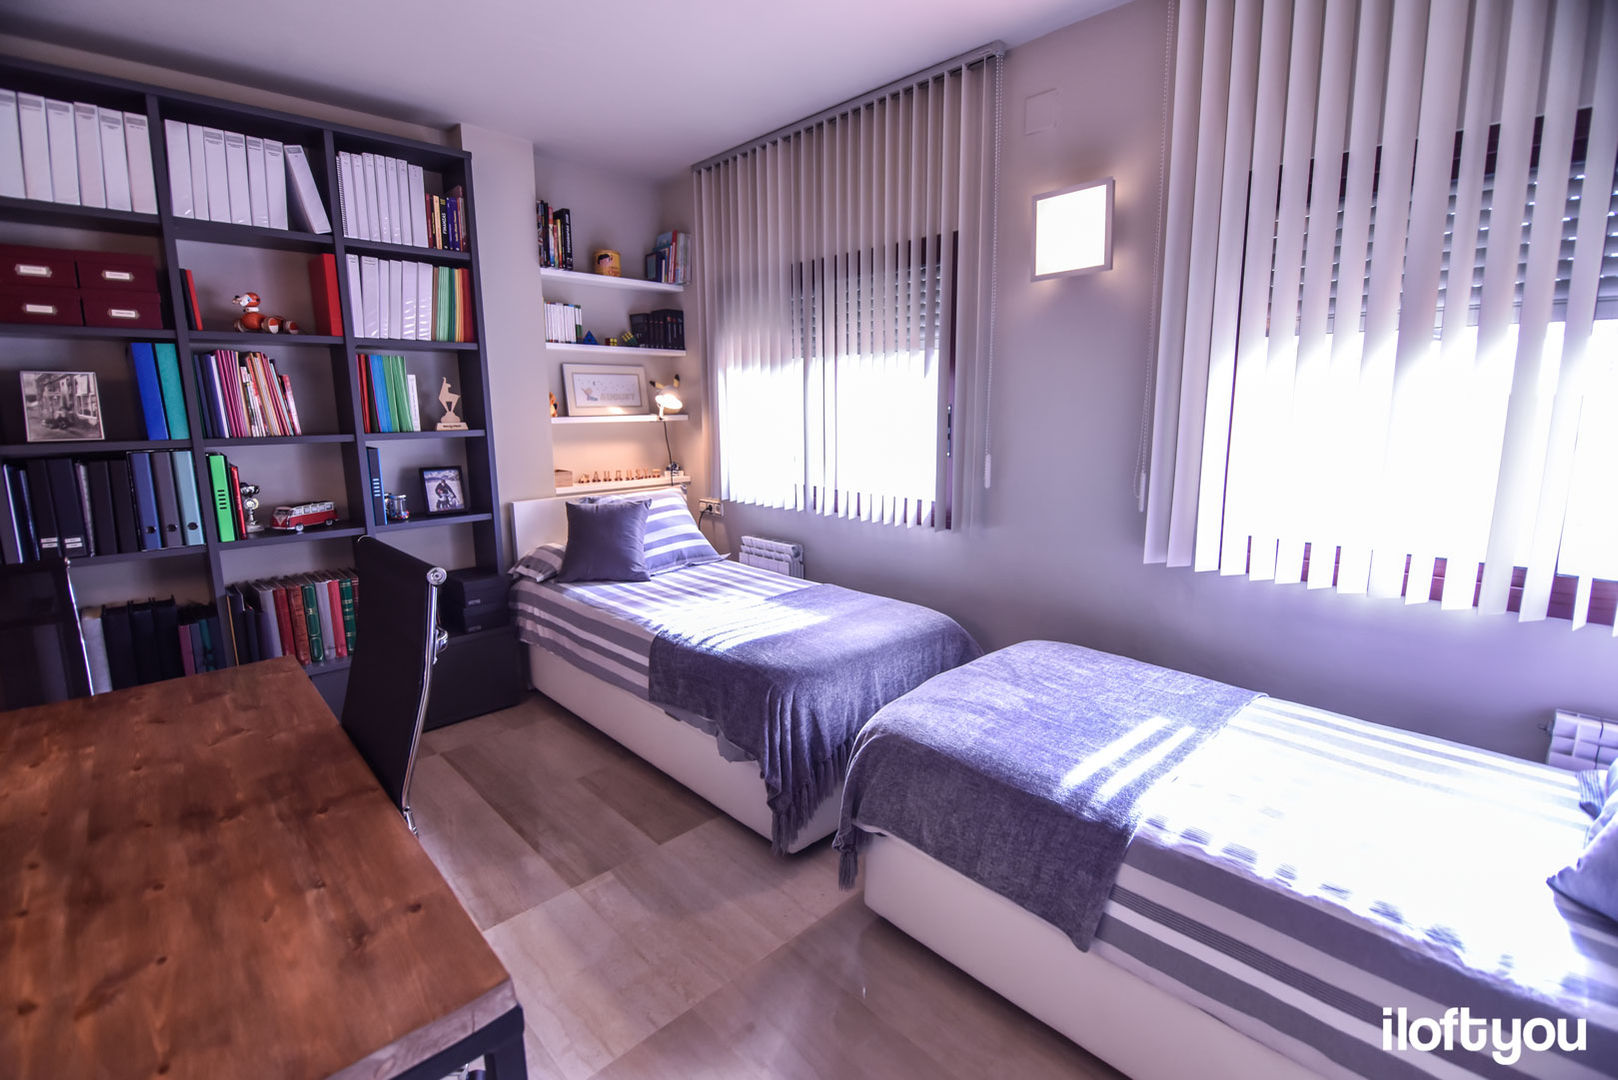 Dormitorio juvenil en Badalona, iloftyou iloftyou Quartos modernos